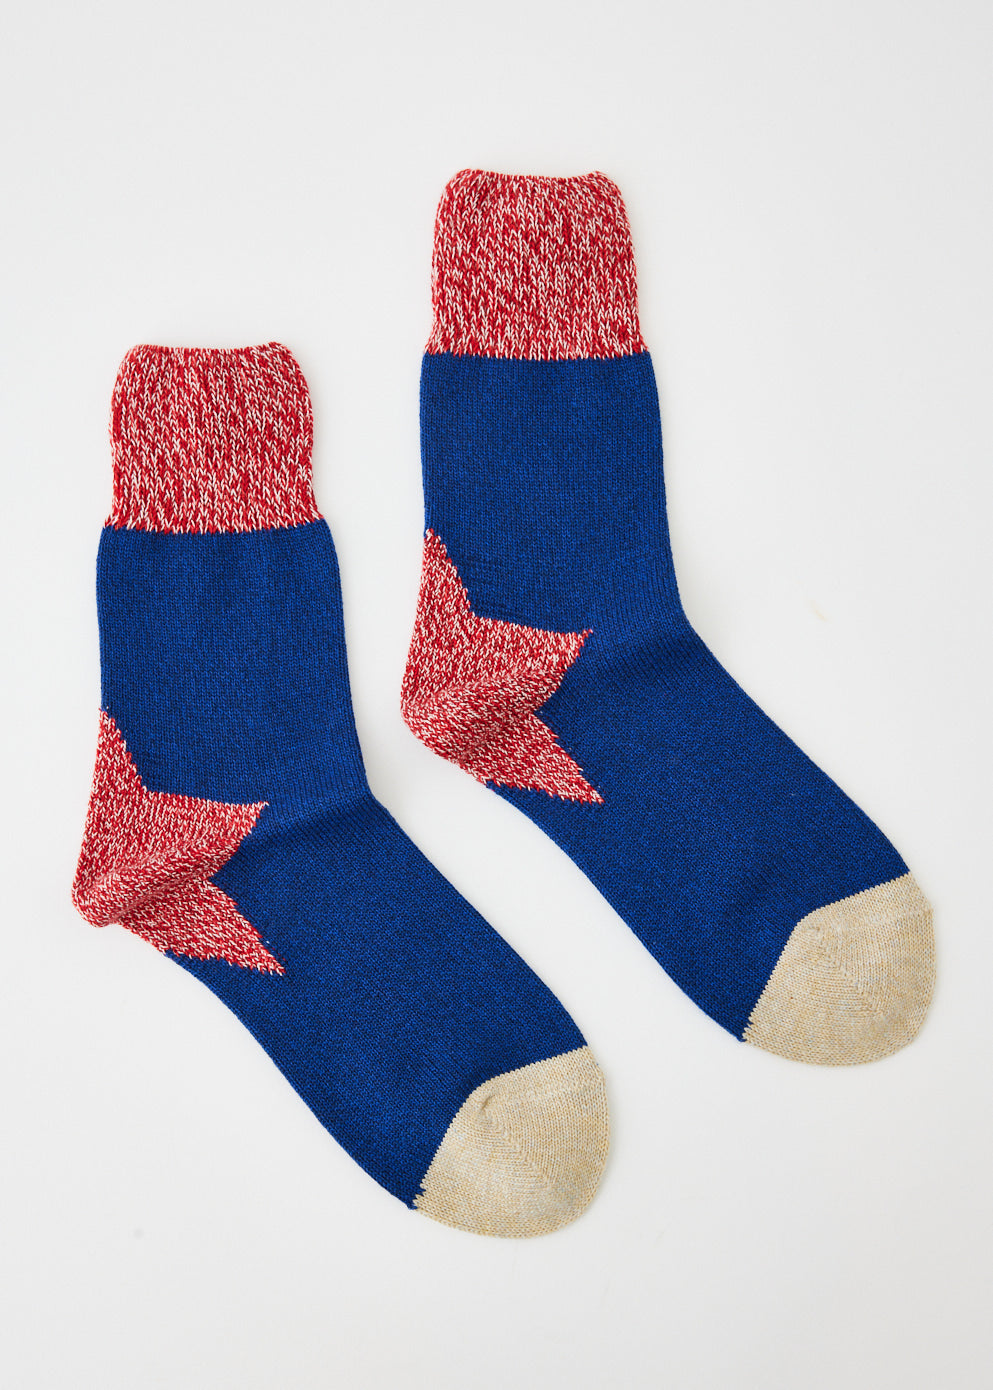 96 Yarns Heel Apolo Socks